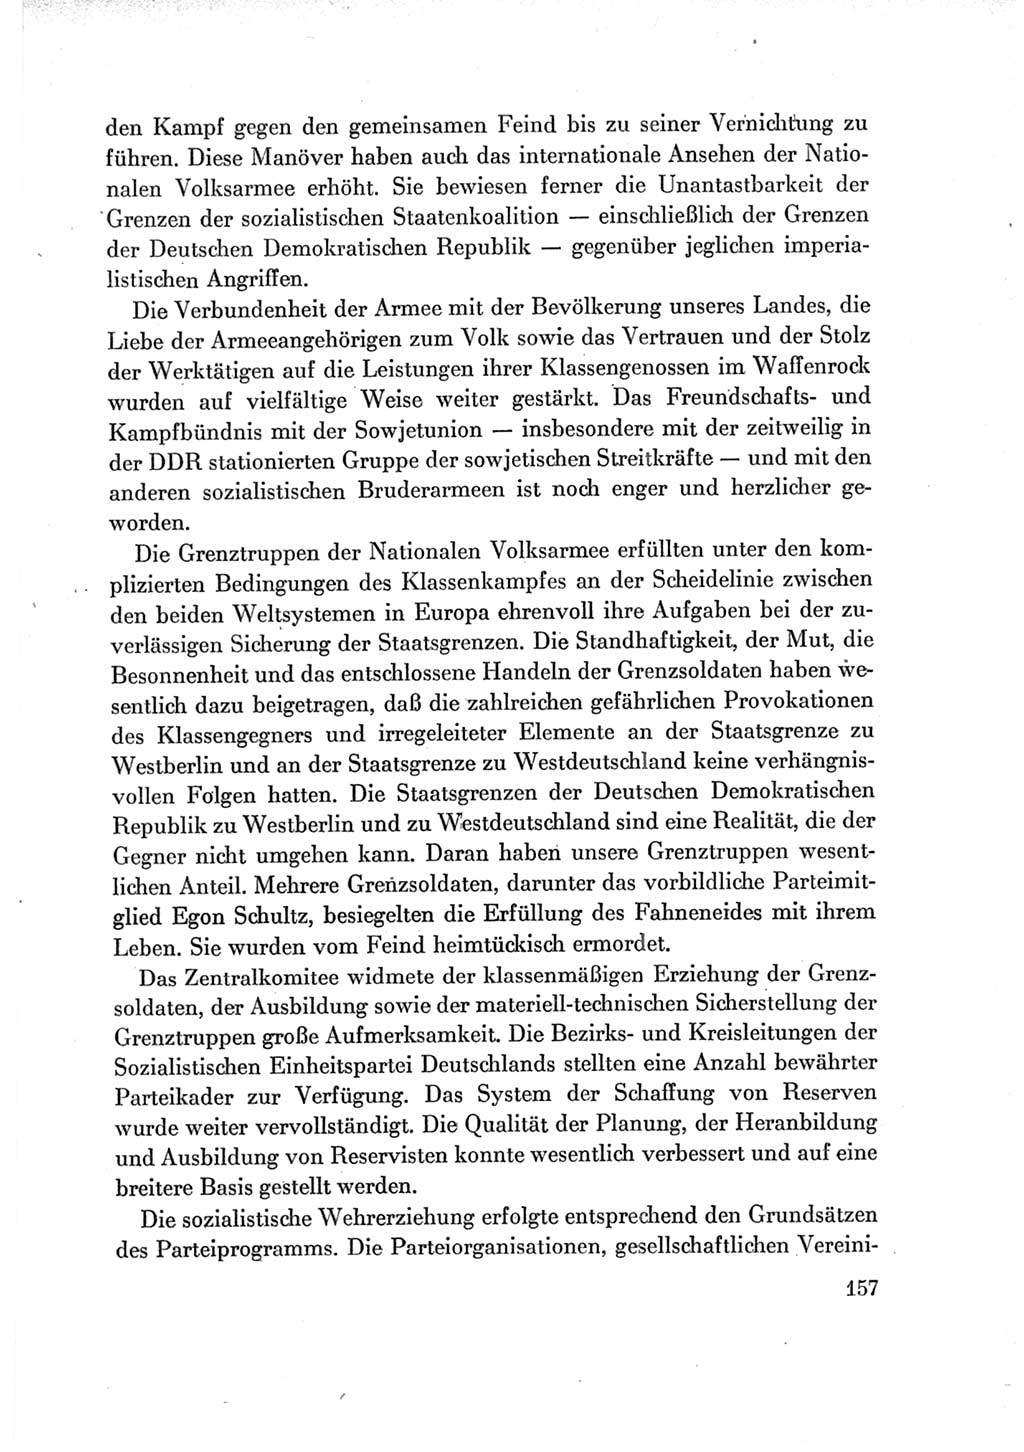 Protokoll der Verhandlungen des Ⅶ. Parteitages der Sozialistischen Einheitspartei Deutschlands (SED) [Deutsche Demokratische Republik (DDR)] 1967, Band Ⅳ, Seite 157 (Prot. Verh. Ⅶ. PT SED DDR 1967, Bd. Ⅳ, S. 157)